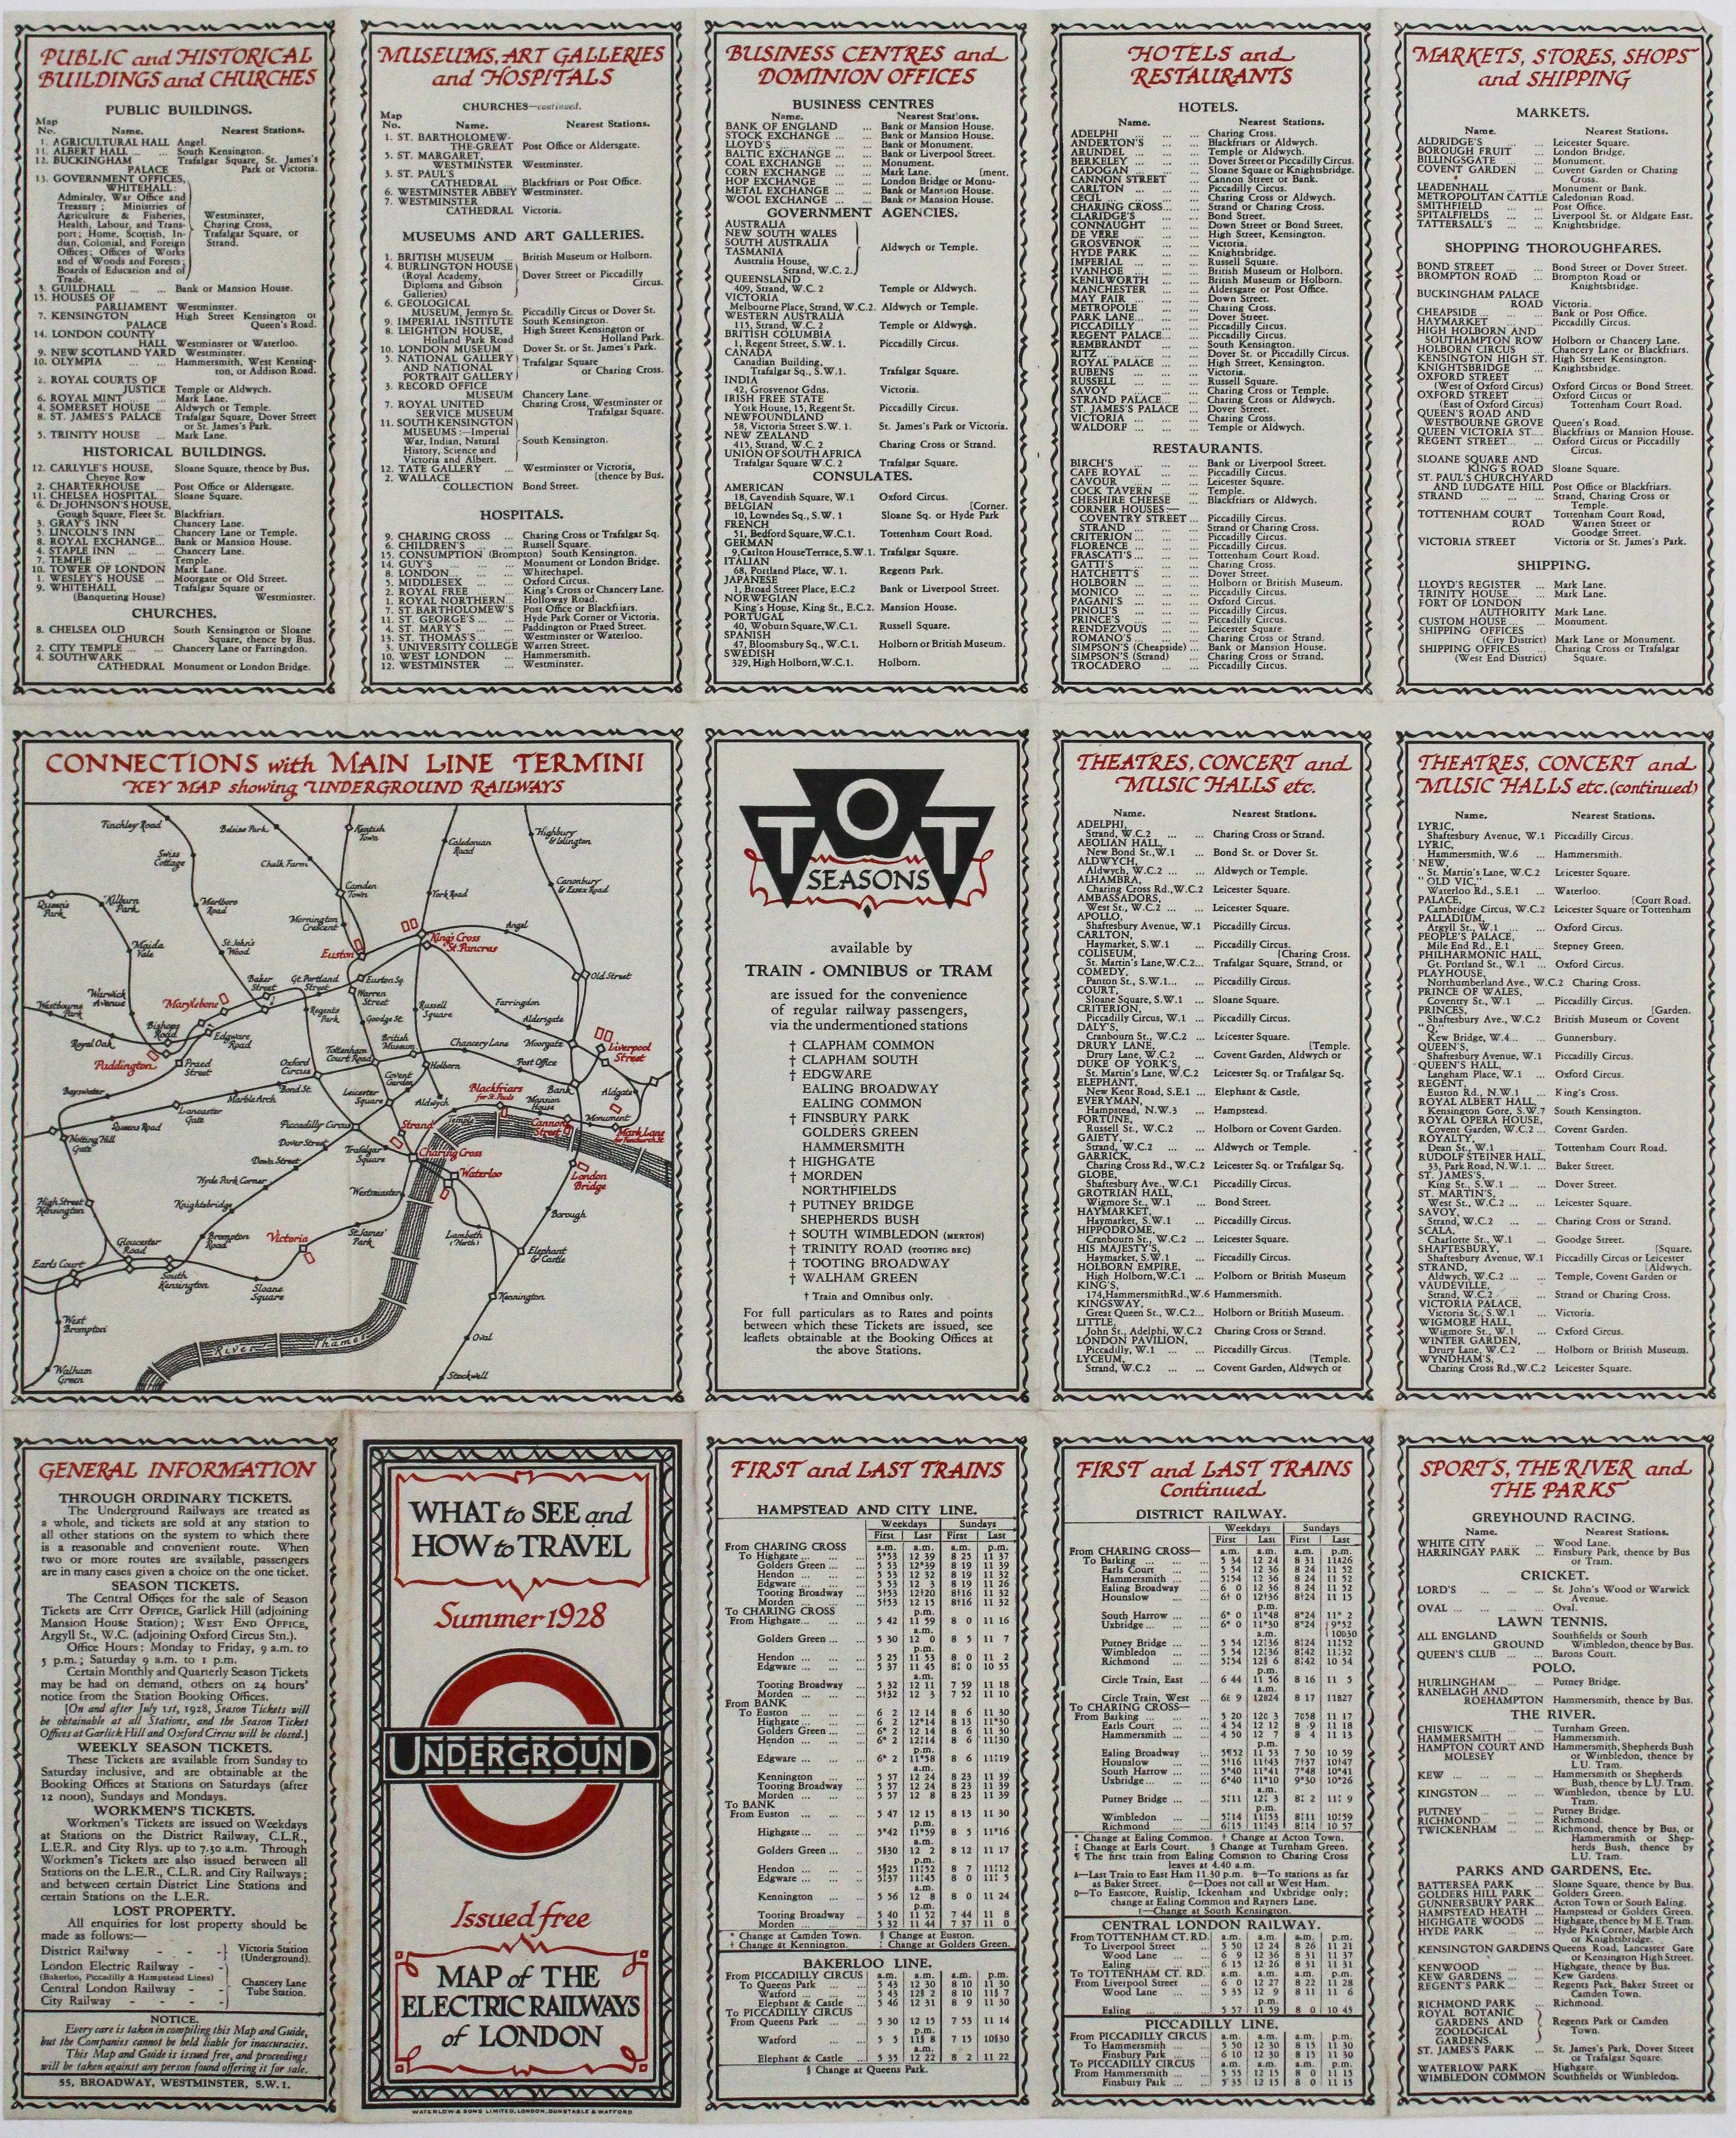 Perman's Summer 1928 Passenger Map